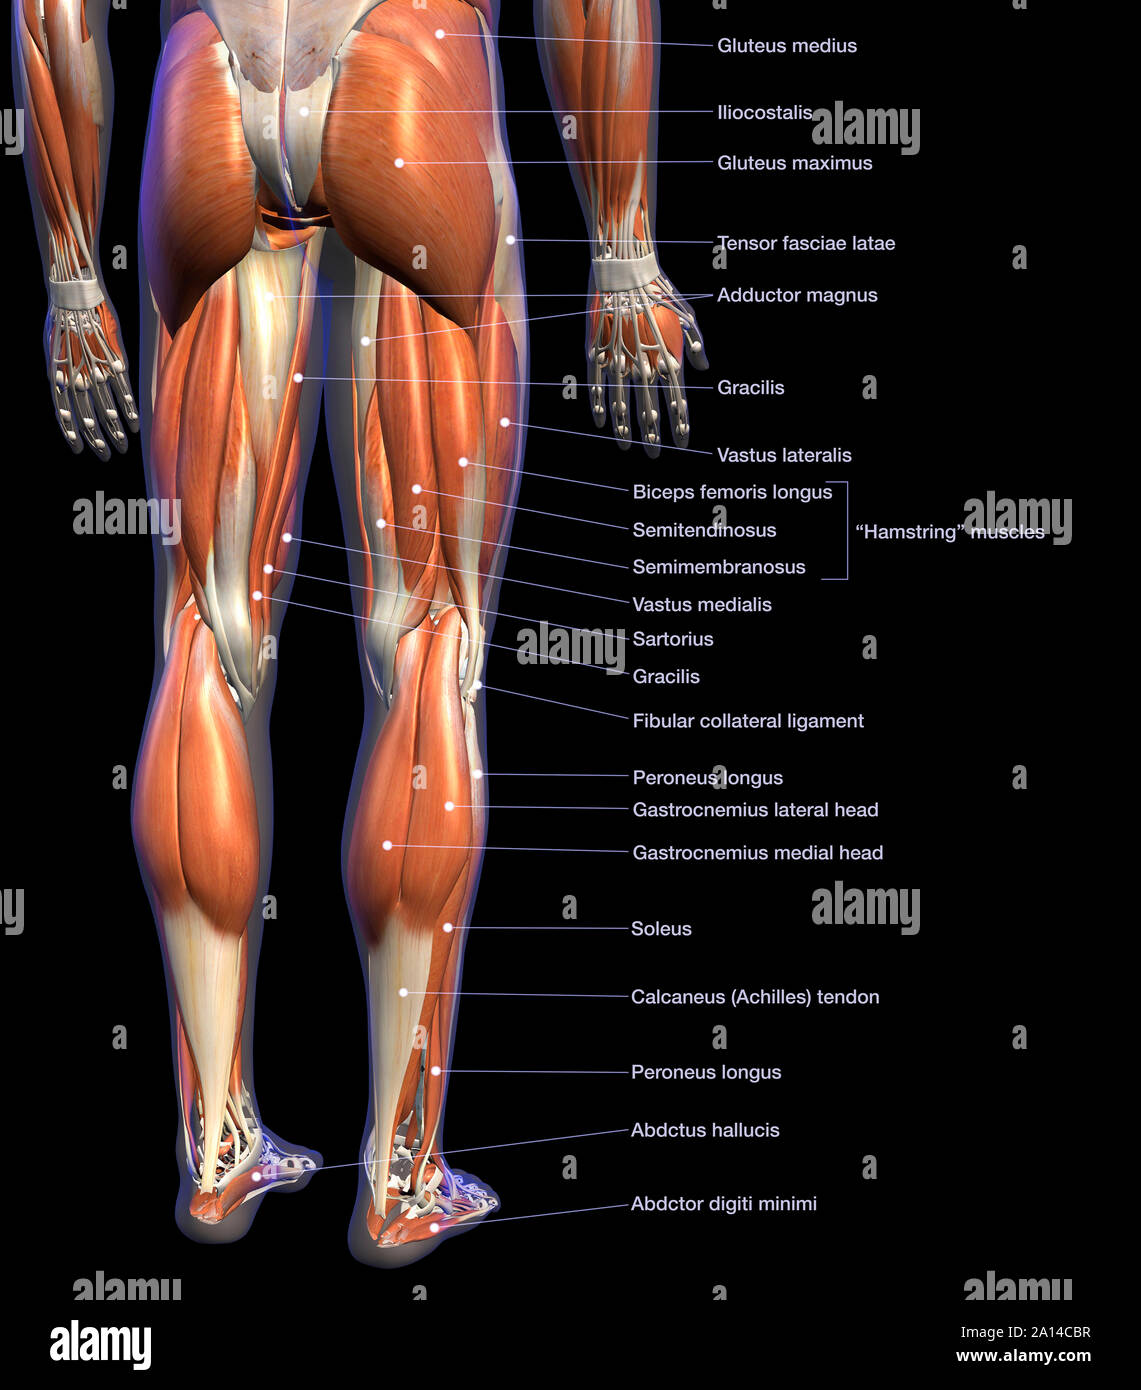 Denominata tabella di anatomia maschile di muscoli delle gambe, su sfondo nero. Foto Stock